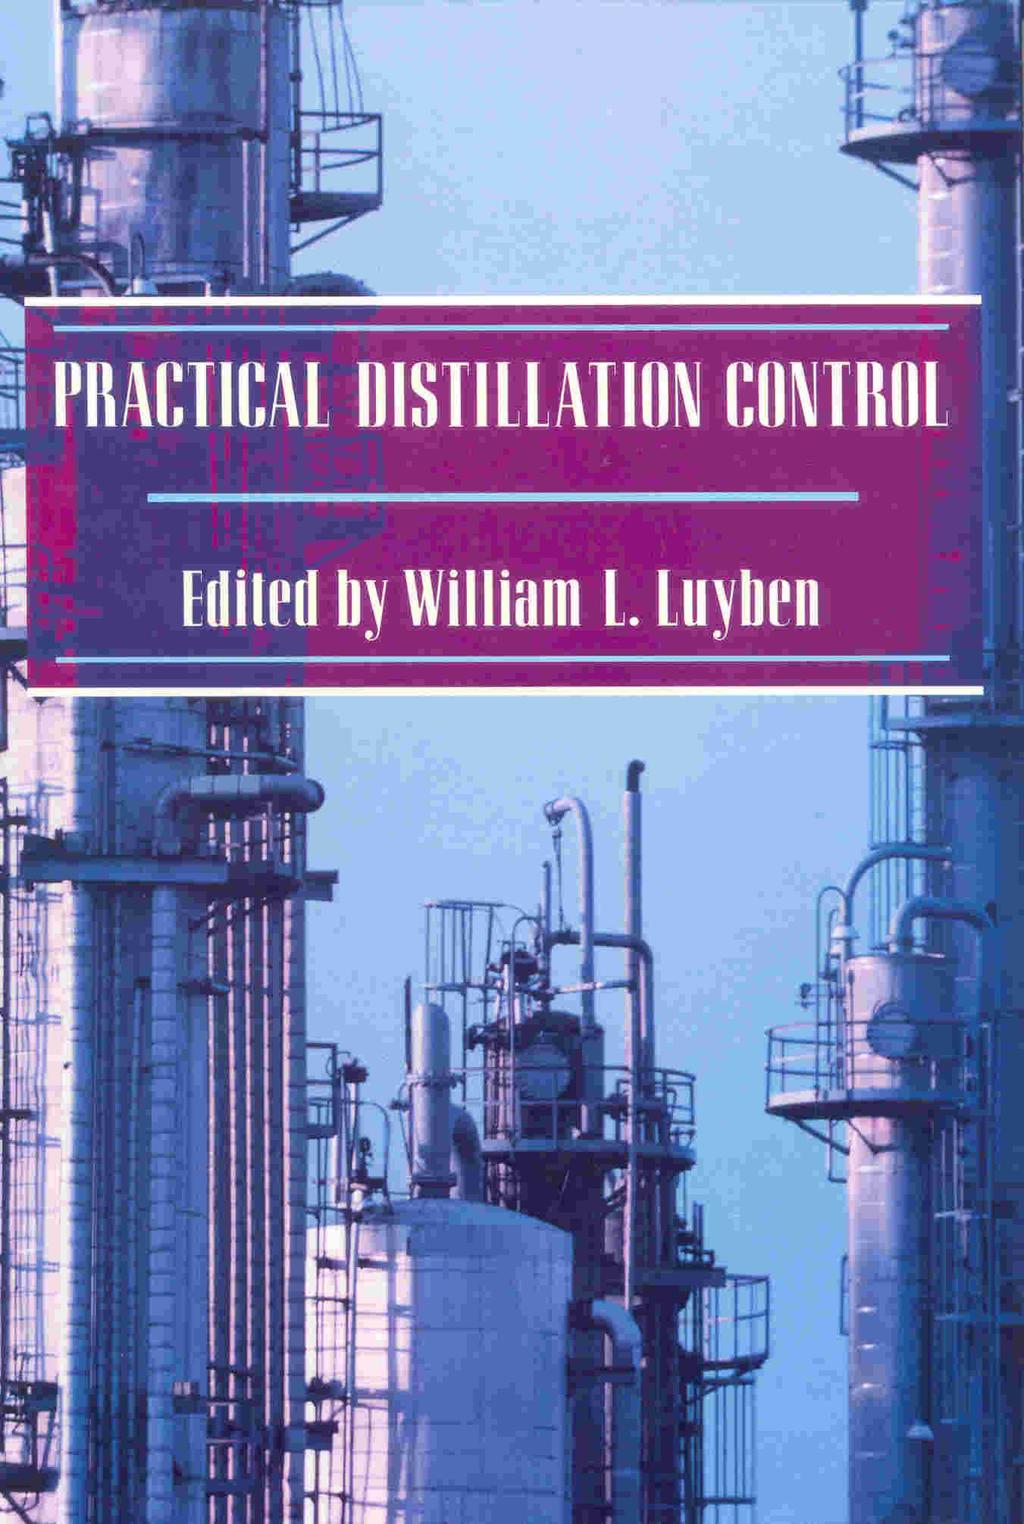 yben, W. L. Practical Distillation Control. Van Nostrand Reinhold, New York, USA, 1992.